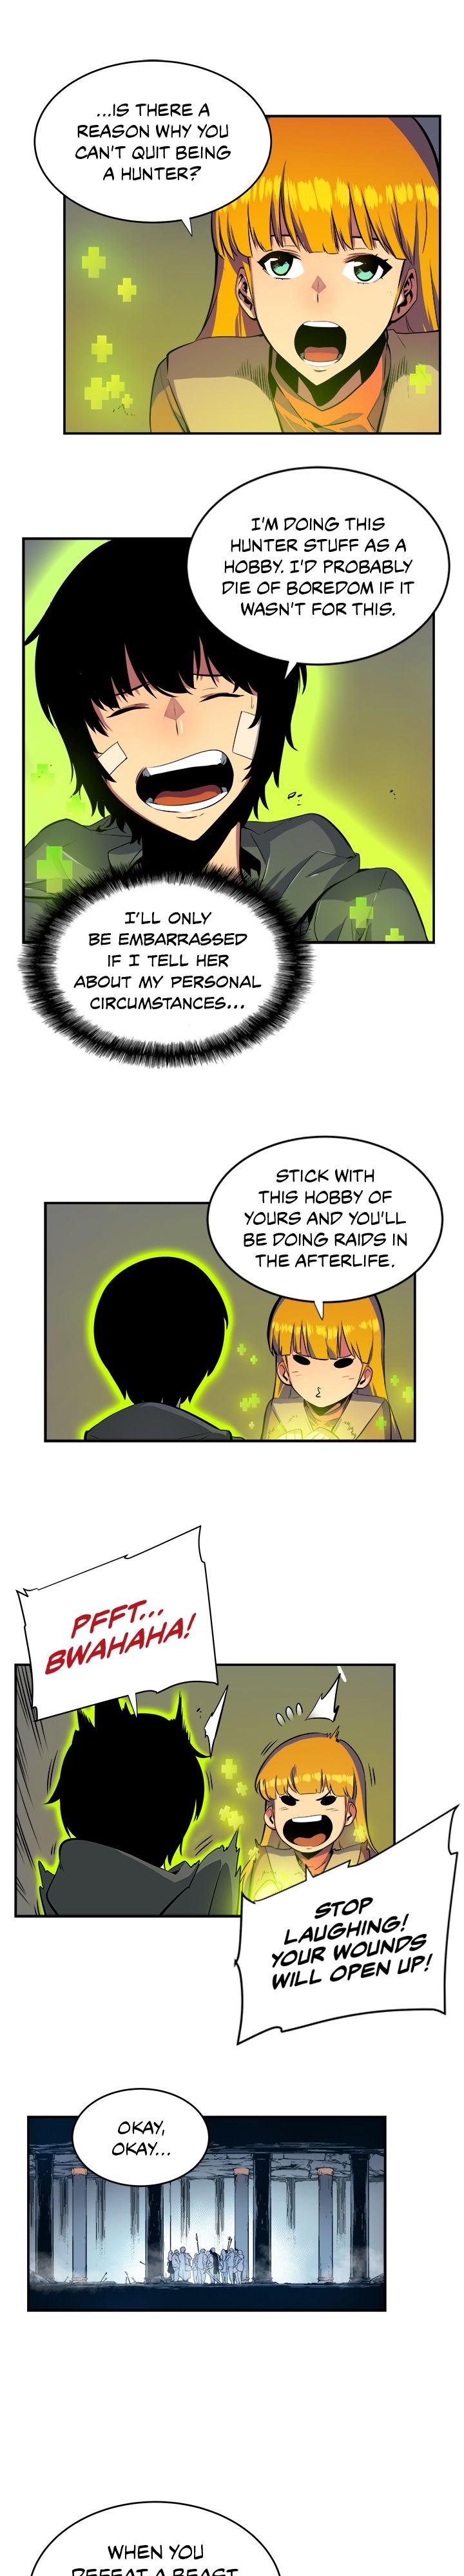 Solo Leveling Manga Manga Chapter - 2 - image 5